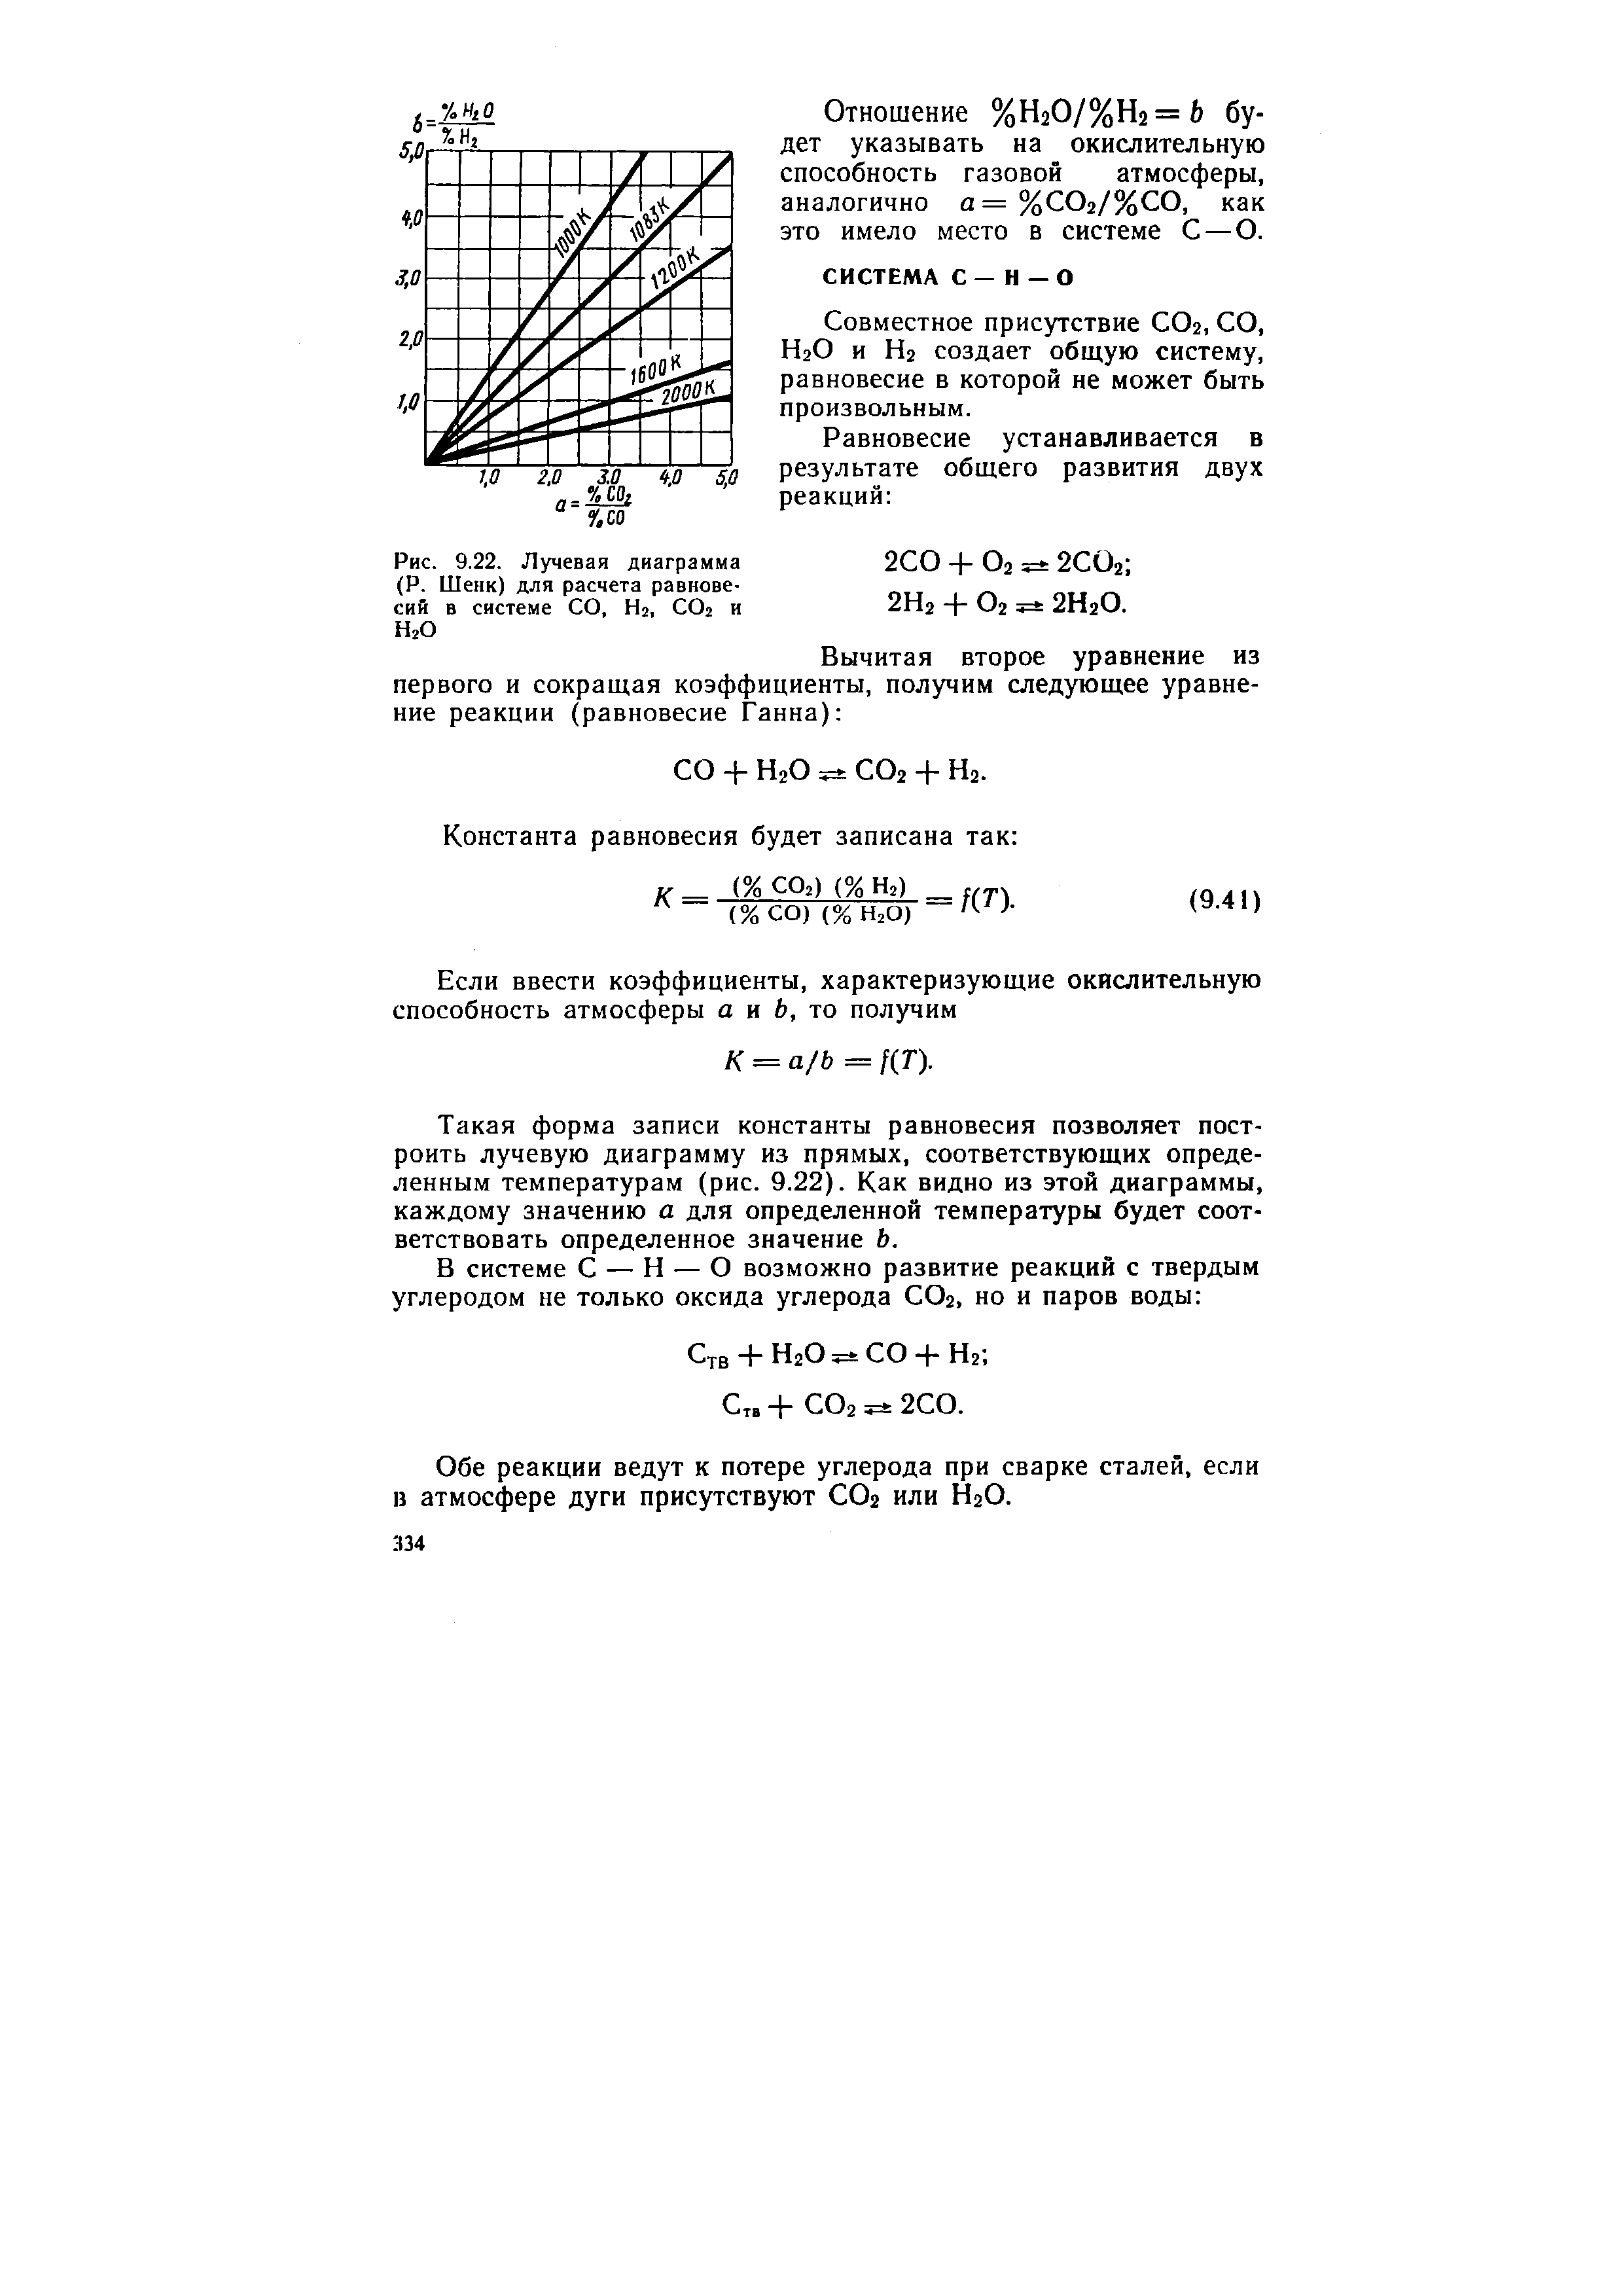 Рис. 9.22. Лучевая диаграмма (Р. Шенк) для расчета равновесий в системе СО, Hj, СО2 и Н2О
